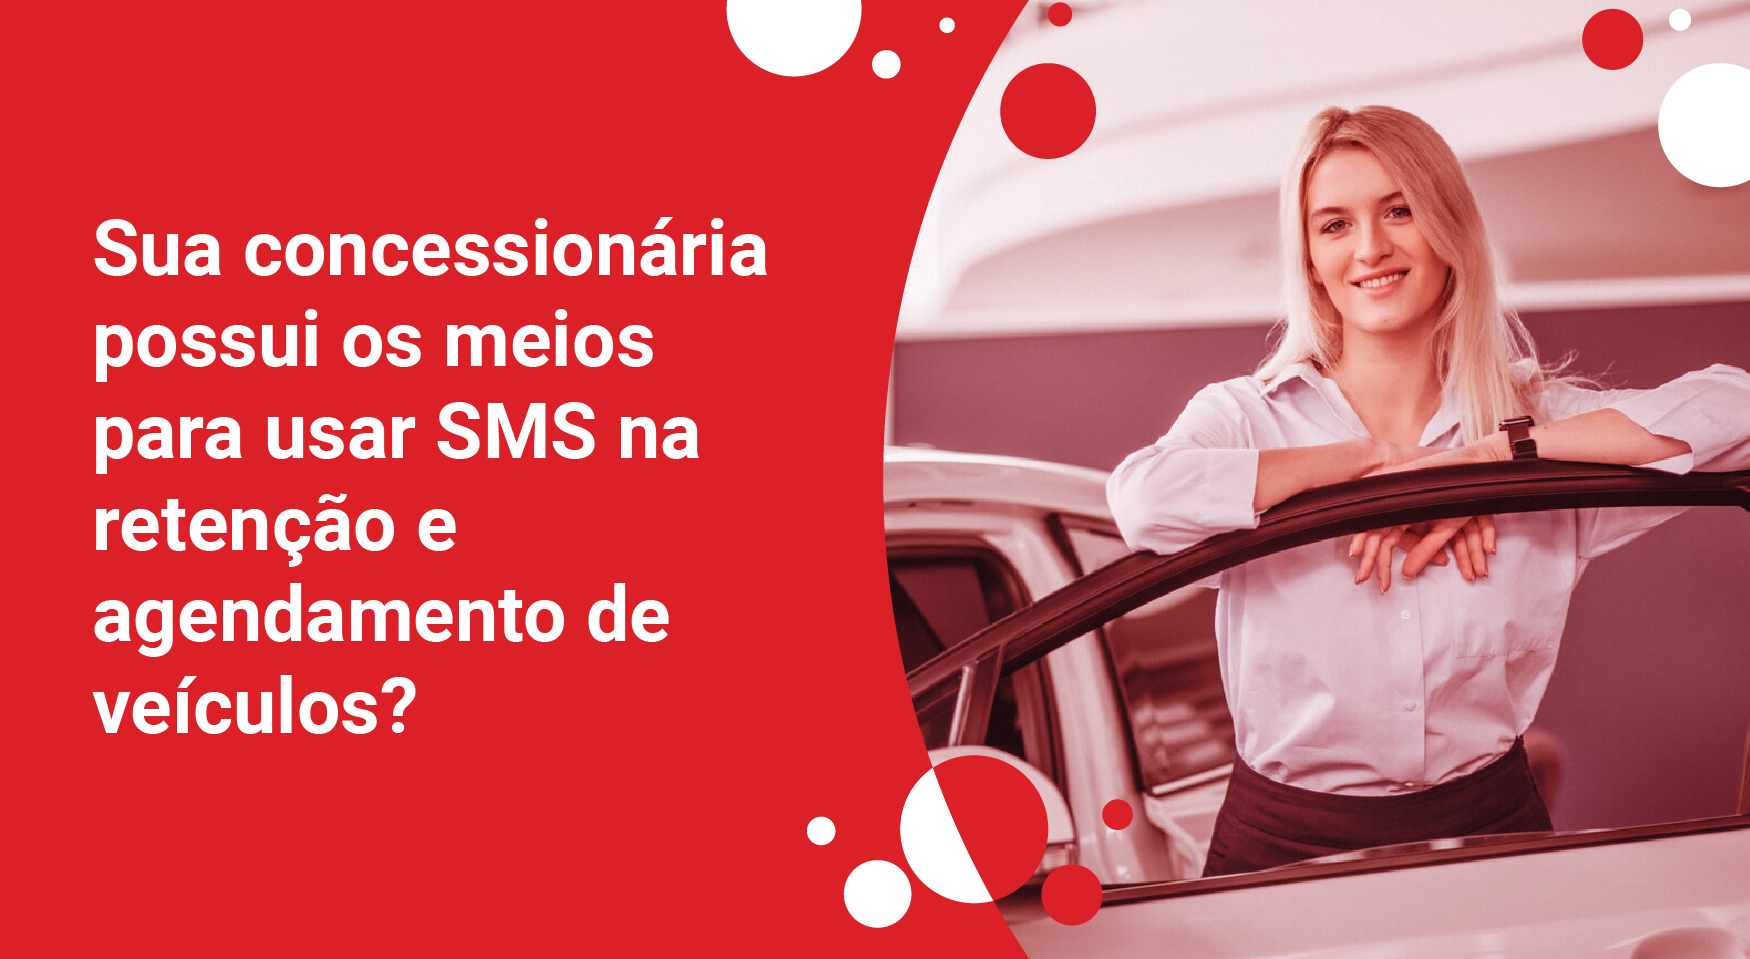 Sua concessionária possui os meios para usar SMS na retenção e agendamento de veículos?